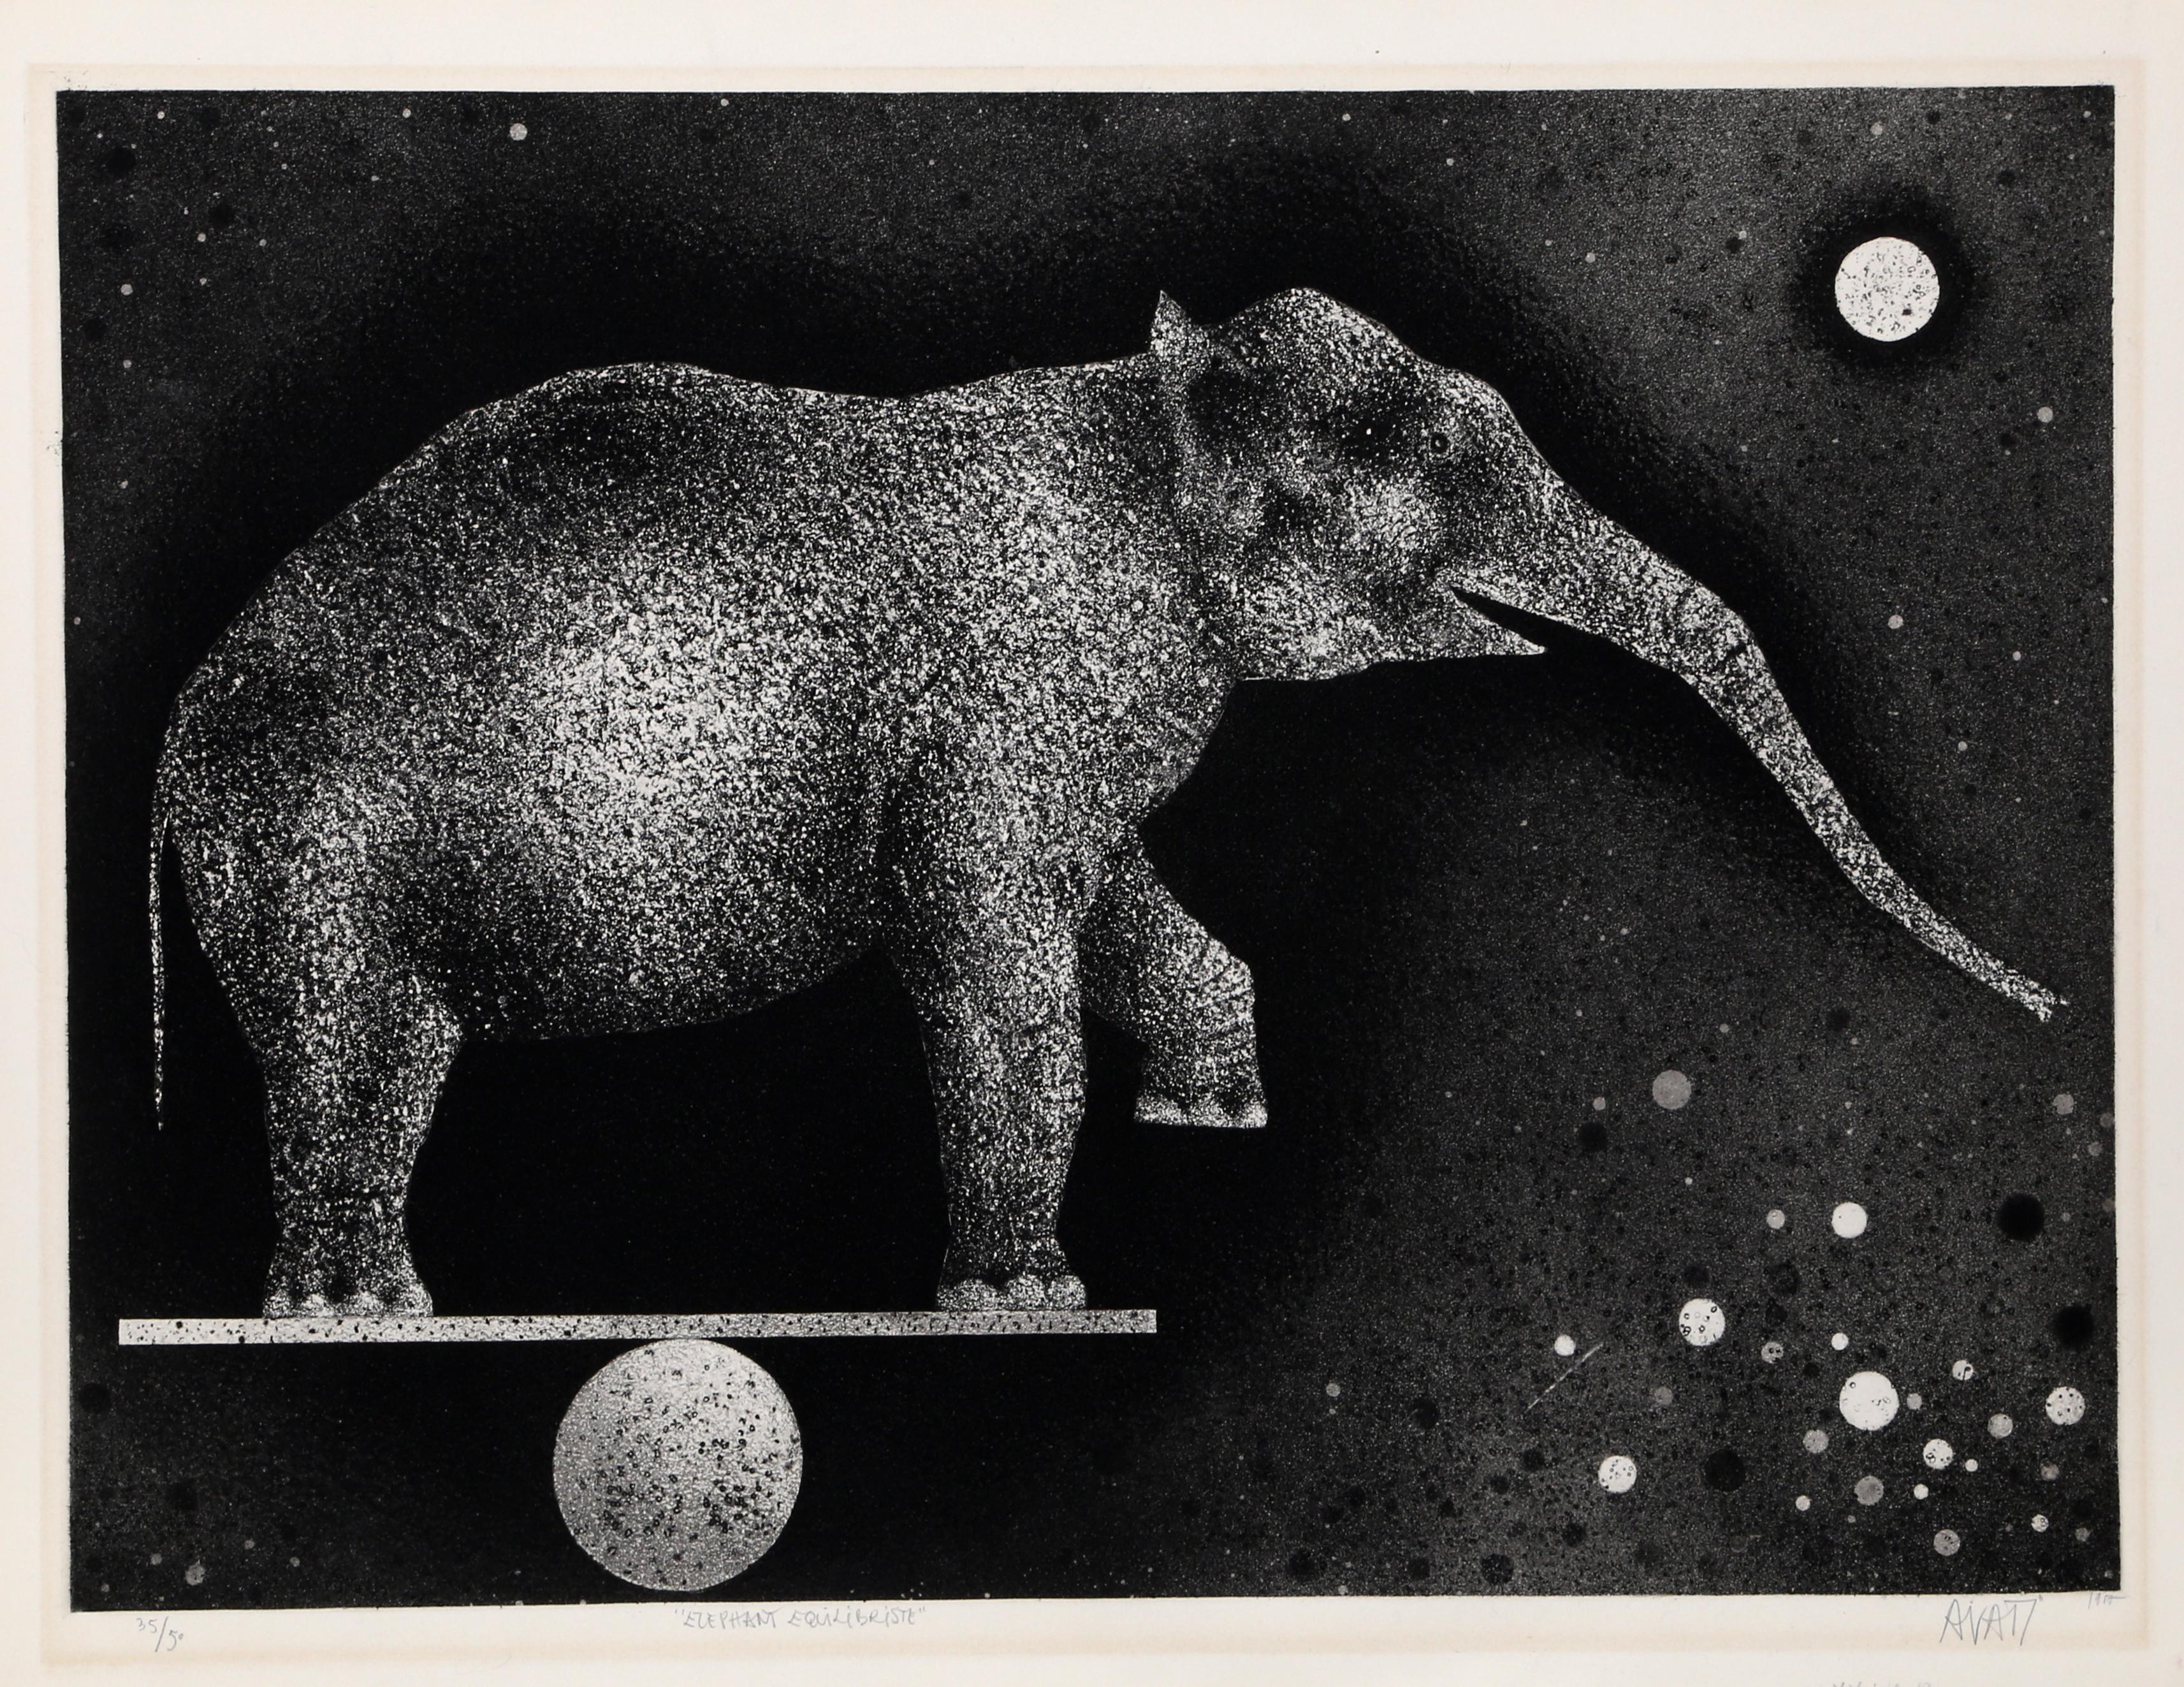 Künstler: Mario Avati, Franzose (1921 - 2009)
Titel: Elefant Equilibriste
Jahr: 1969
Medium: Schabkunst, mit Bleistift signiert und nummeriert
Auflage: 35/50
Bildgröße: 17,5 x 24 Zoll
Größe: 20 x 26 Zoll (50,8 x 66,04 cm)